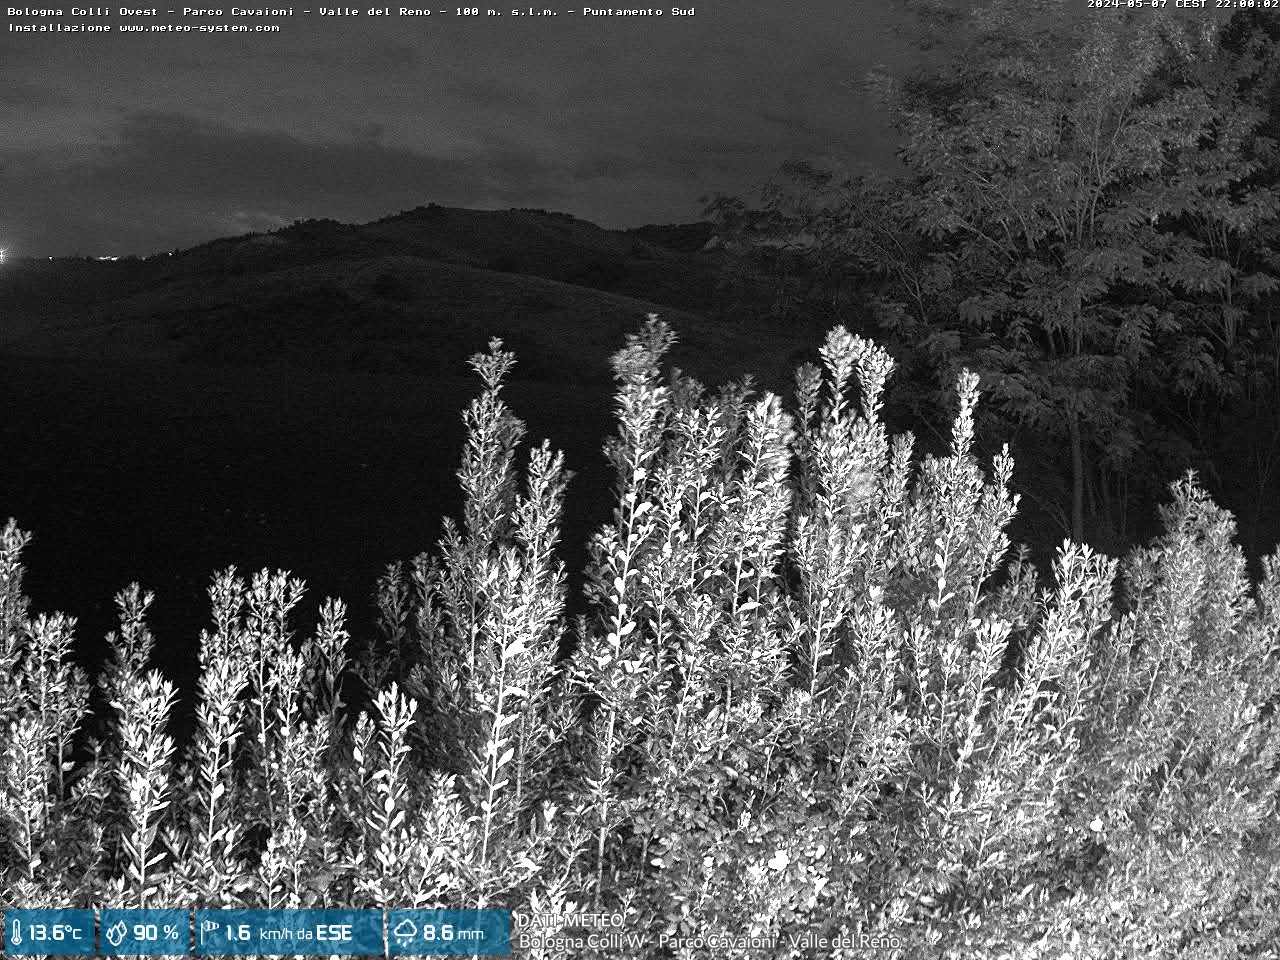 webcam Bologna Colli W - Parco Cavaioni - Valle del Reno (BO)